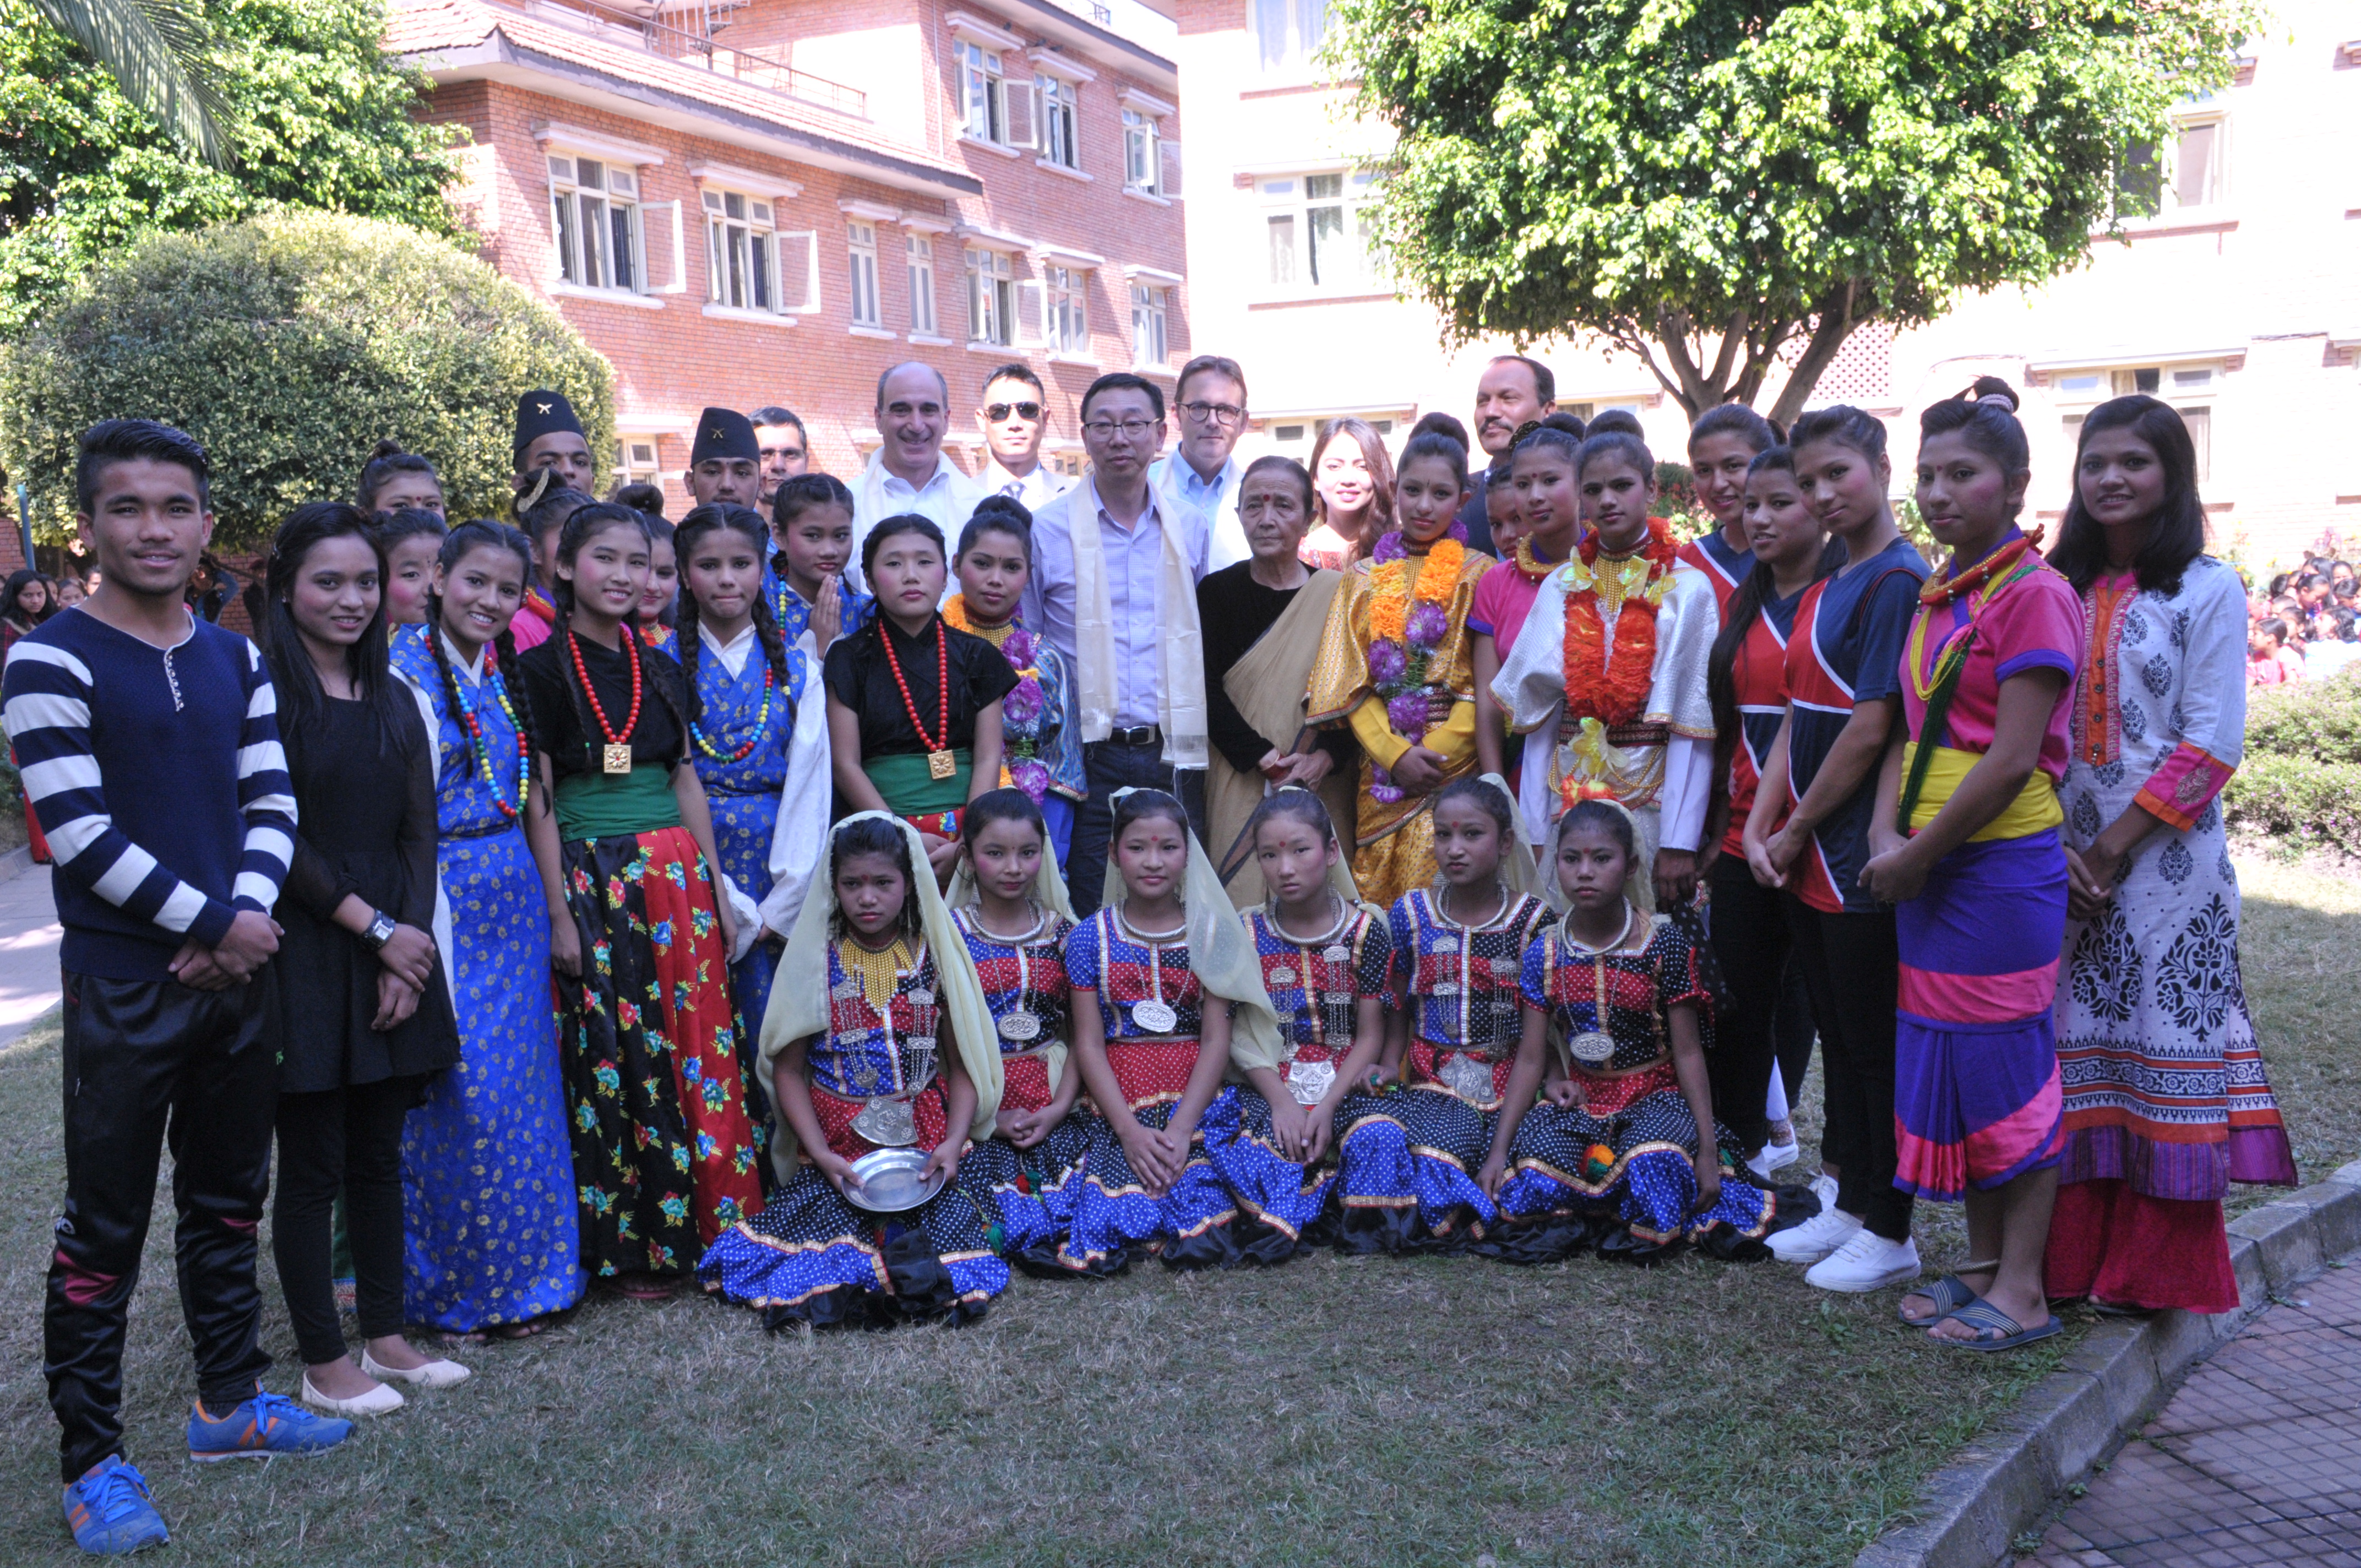 Tao Zhang with children of Maiti Nepal